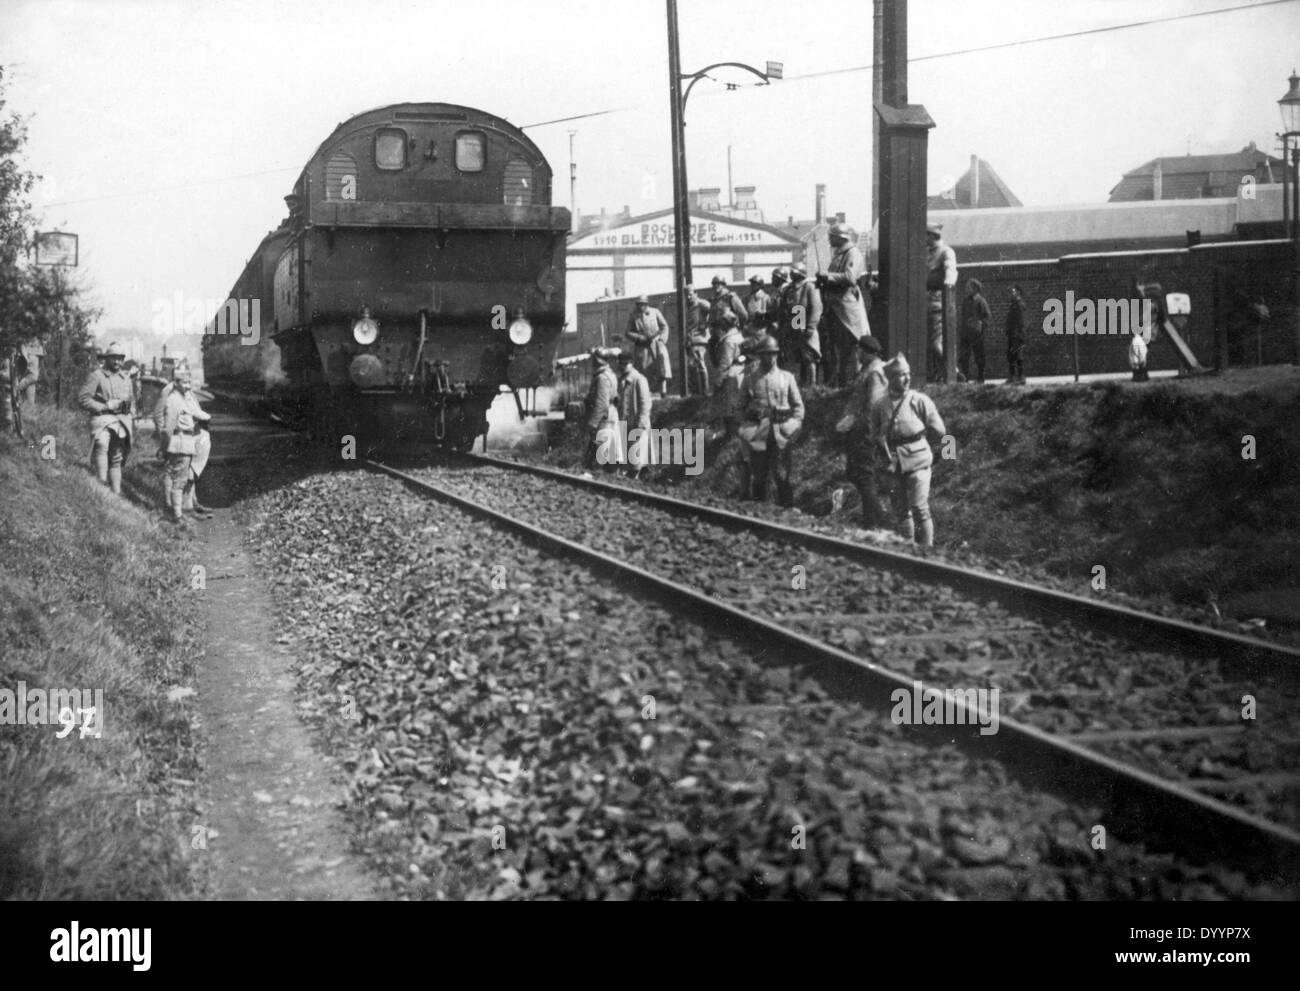 1923-1925: i francesi occupano la regione della Ruhr: treno e nave traffico, soldati francesi nel corso di una ispezione del treno Foto Stock